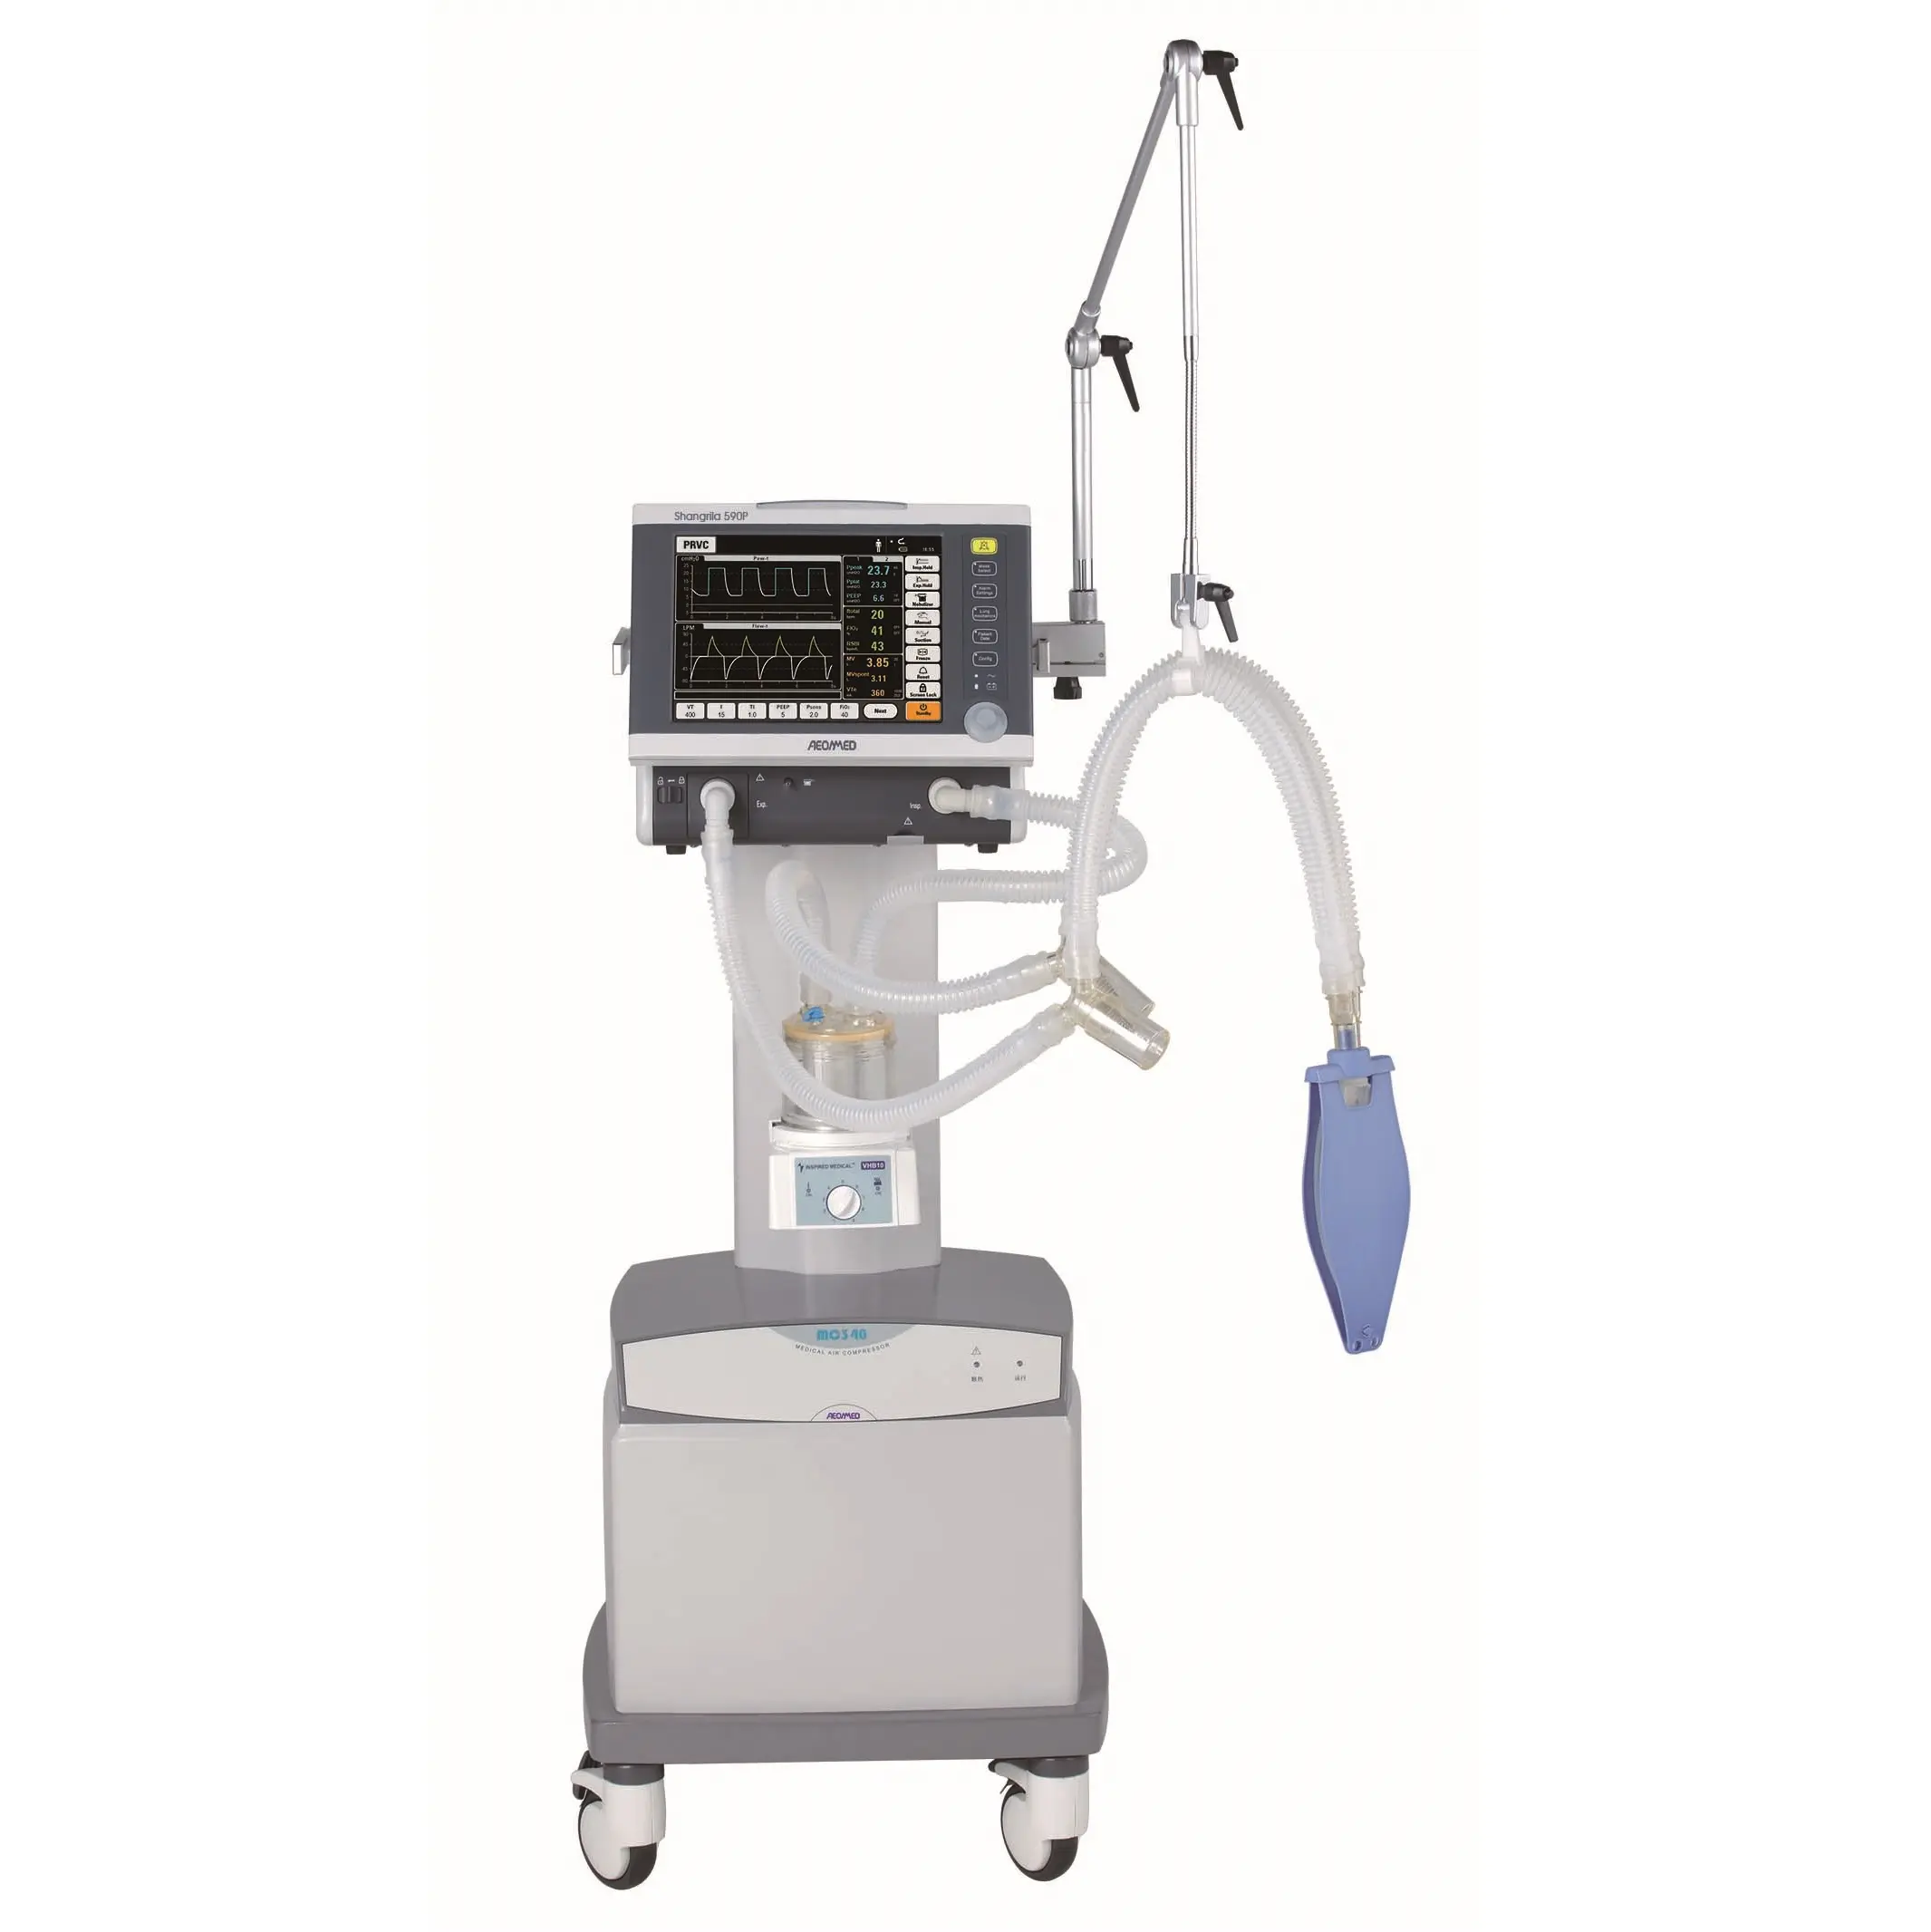 590p tragbare klinische Werkzeuge Beatmung geräte Sauerstoff atmung Beatmung maschine Lungen atem maschine klinische Werkzeuge